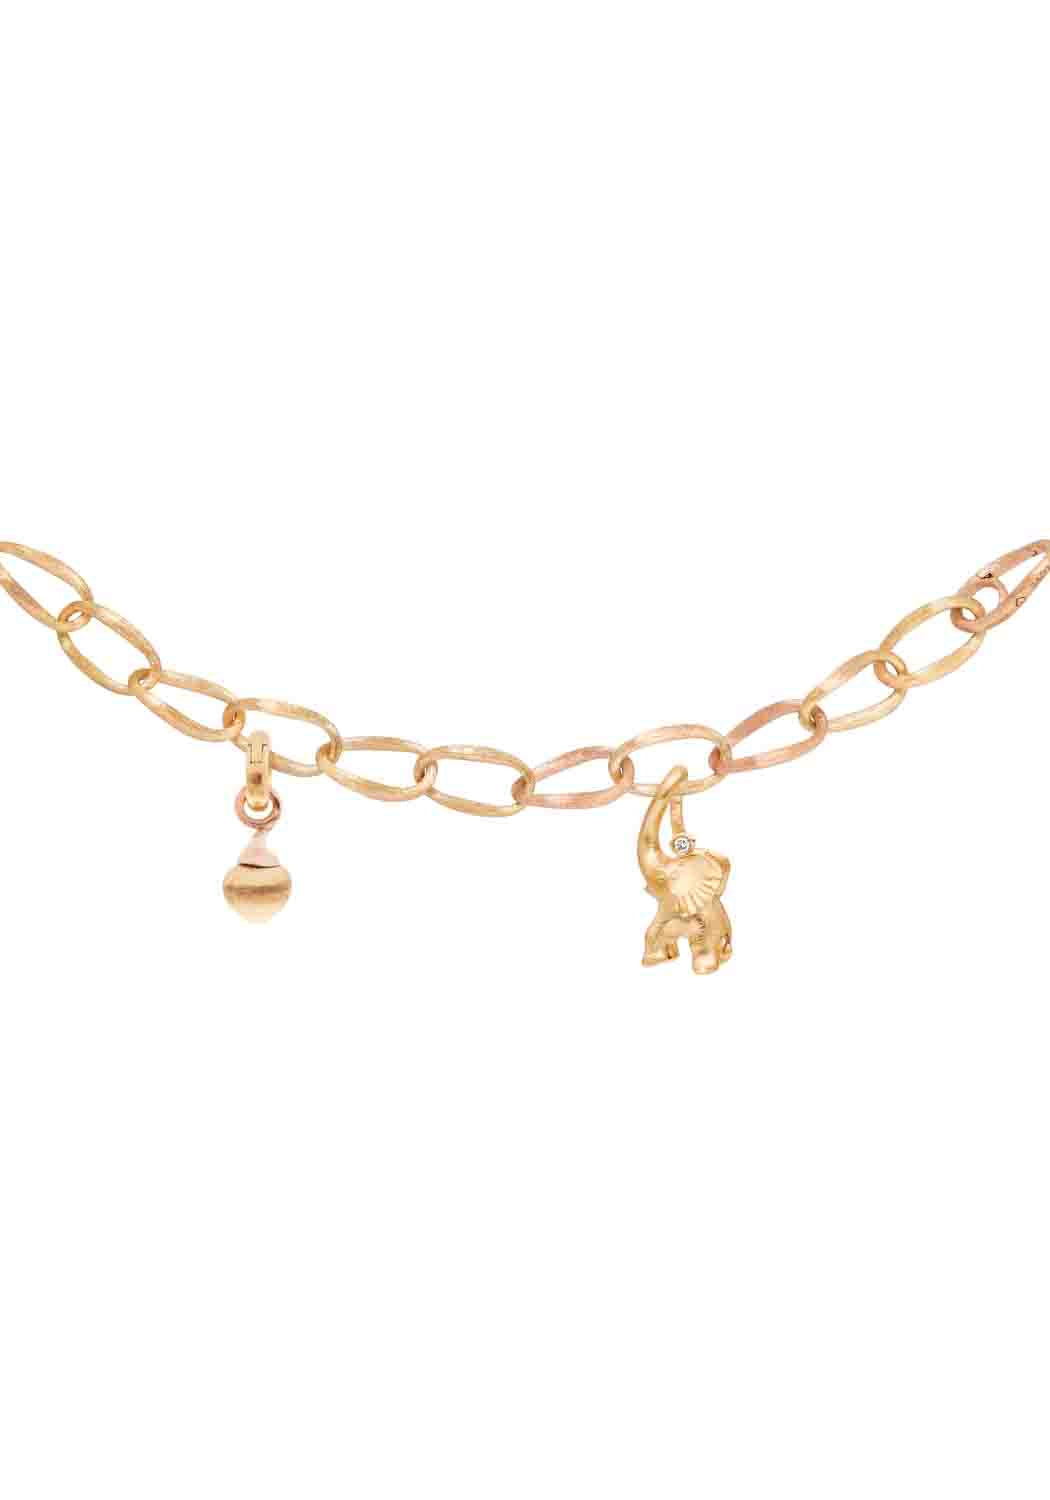 Ole Lynggaard 18KYG Love Link Bracelet | Charms Sold Separate | OsterJewelers.com